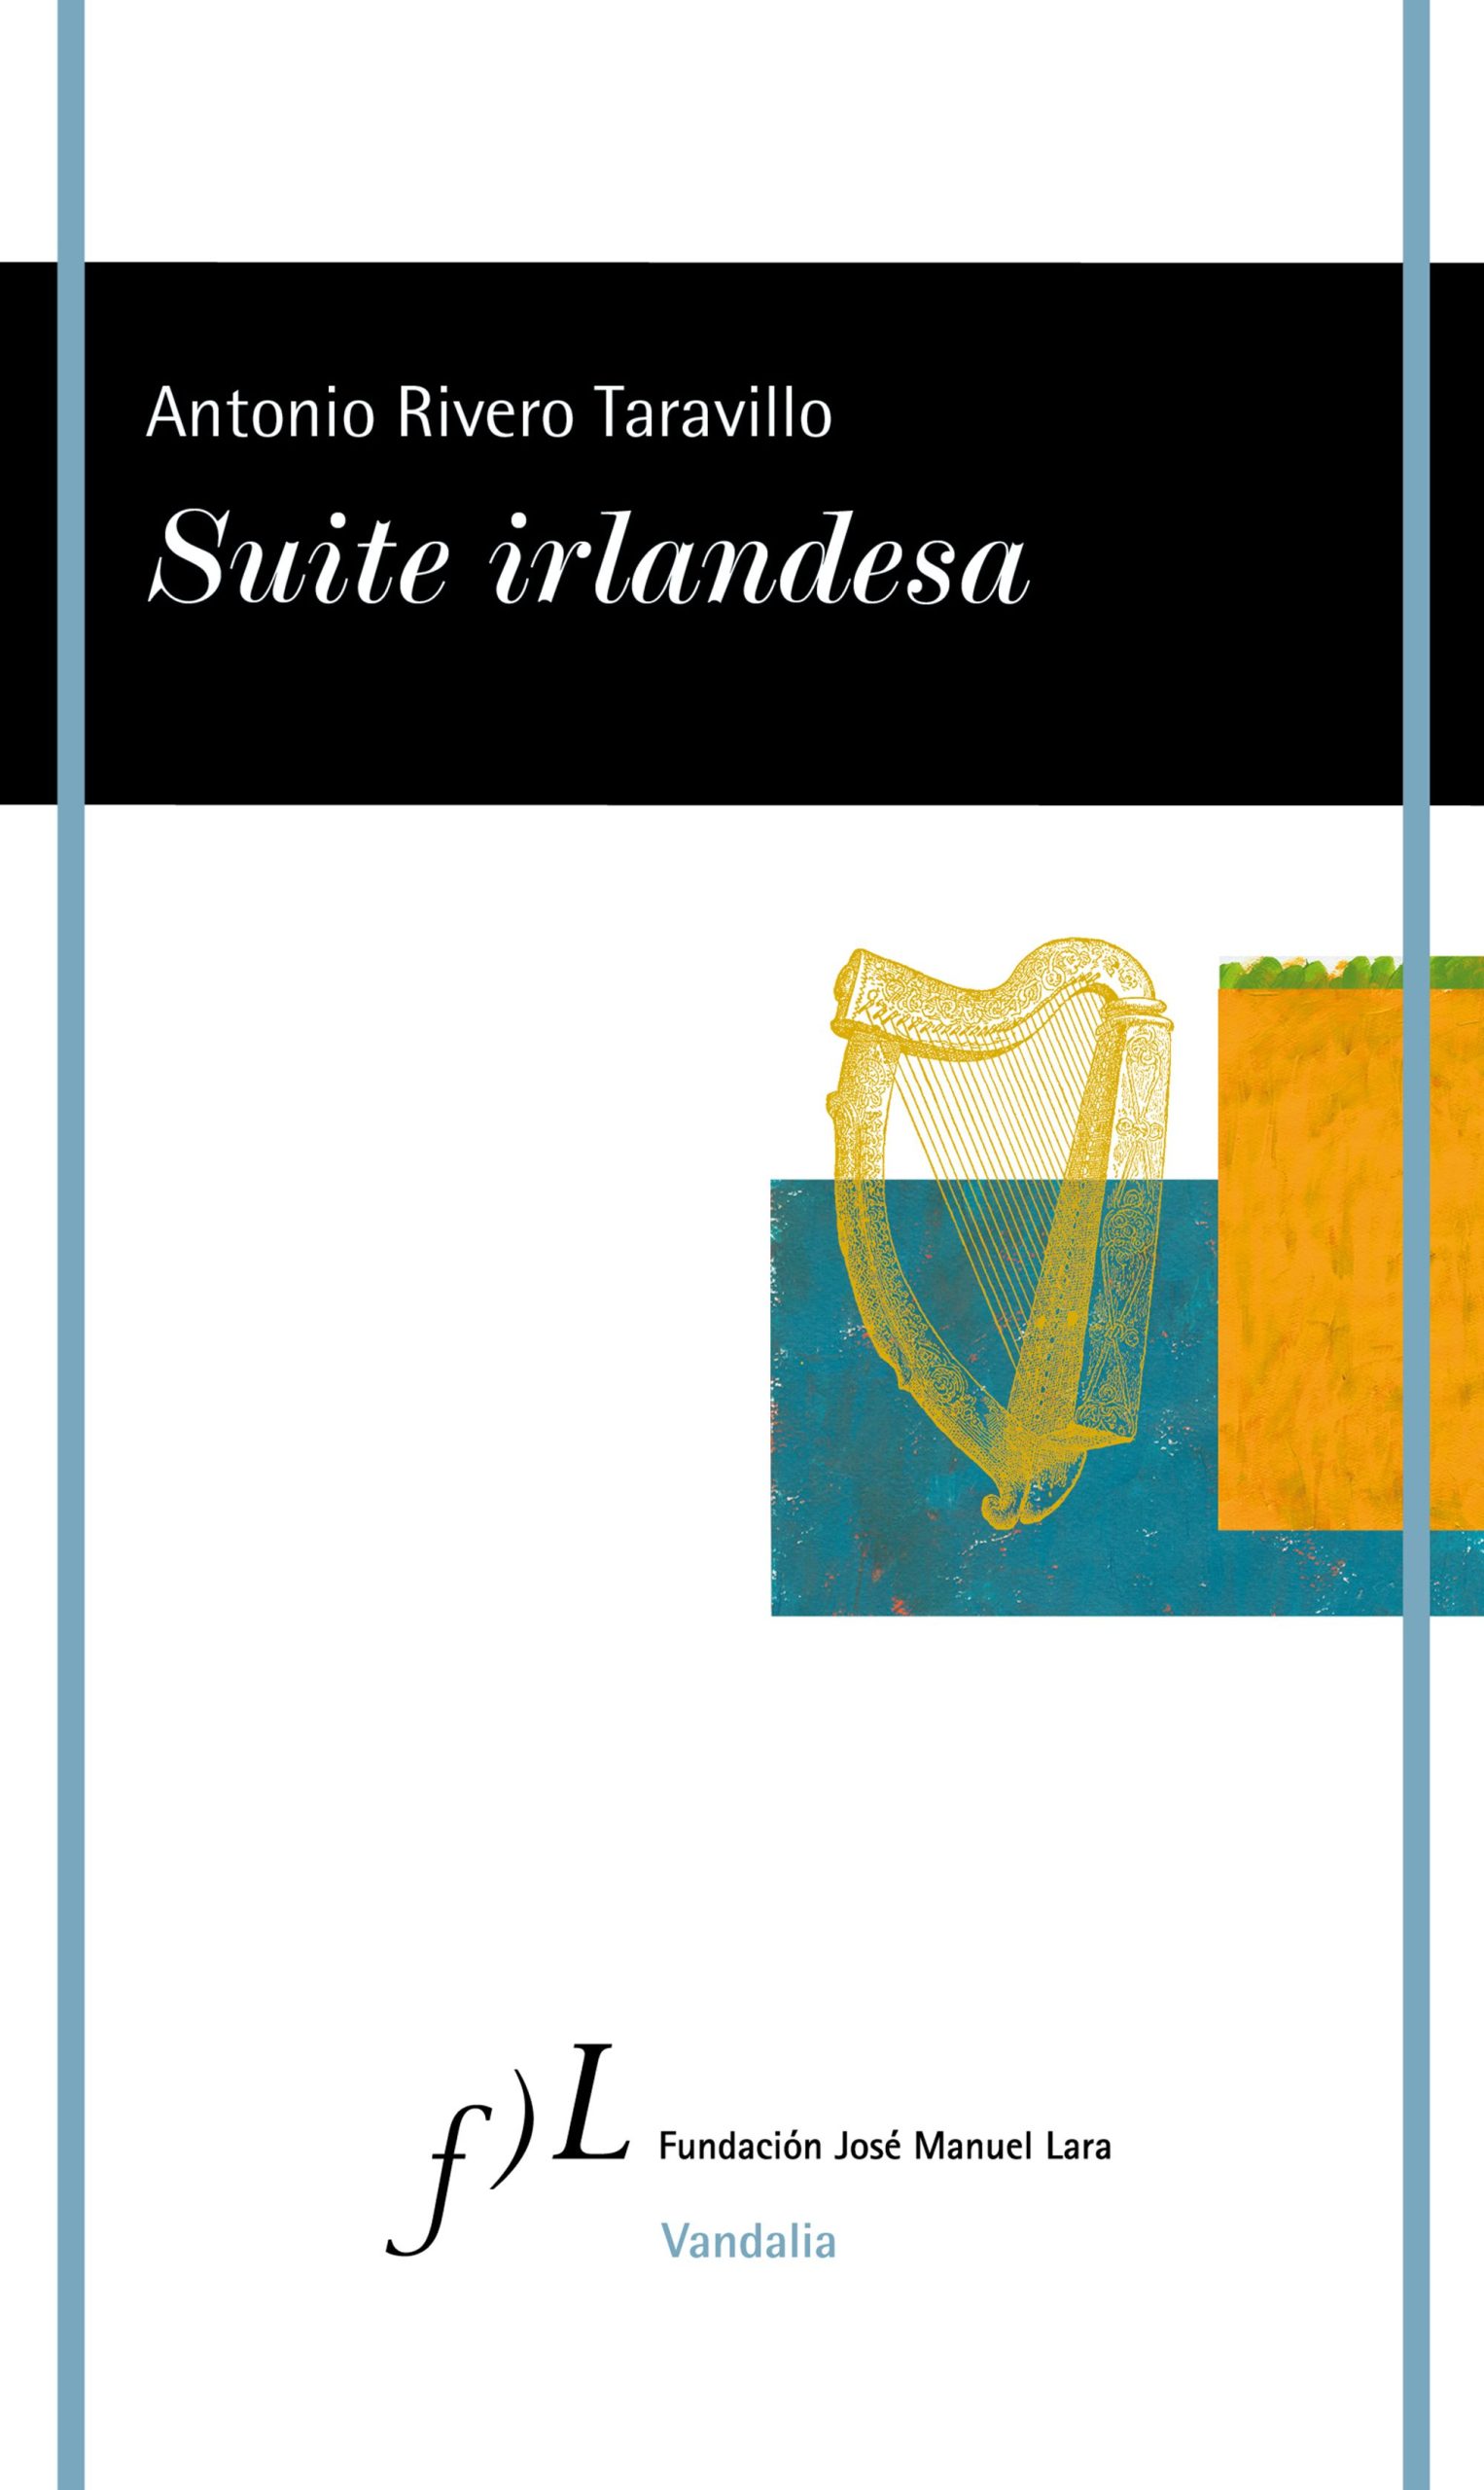 Zenda recomienda: Suite irlandesa, de Antonio Rivero Taravillo